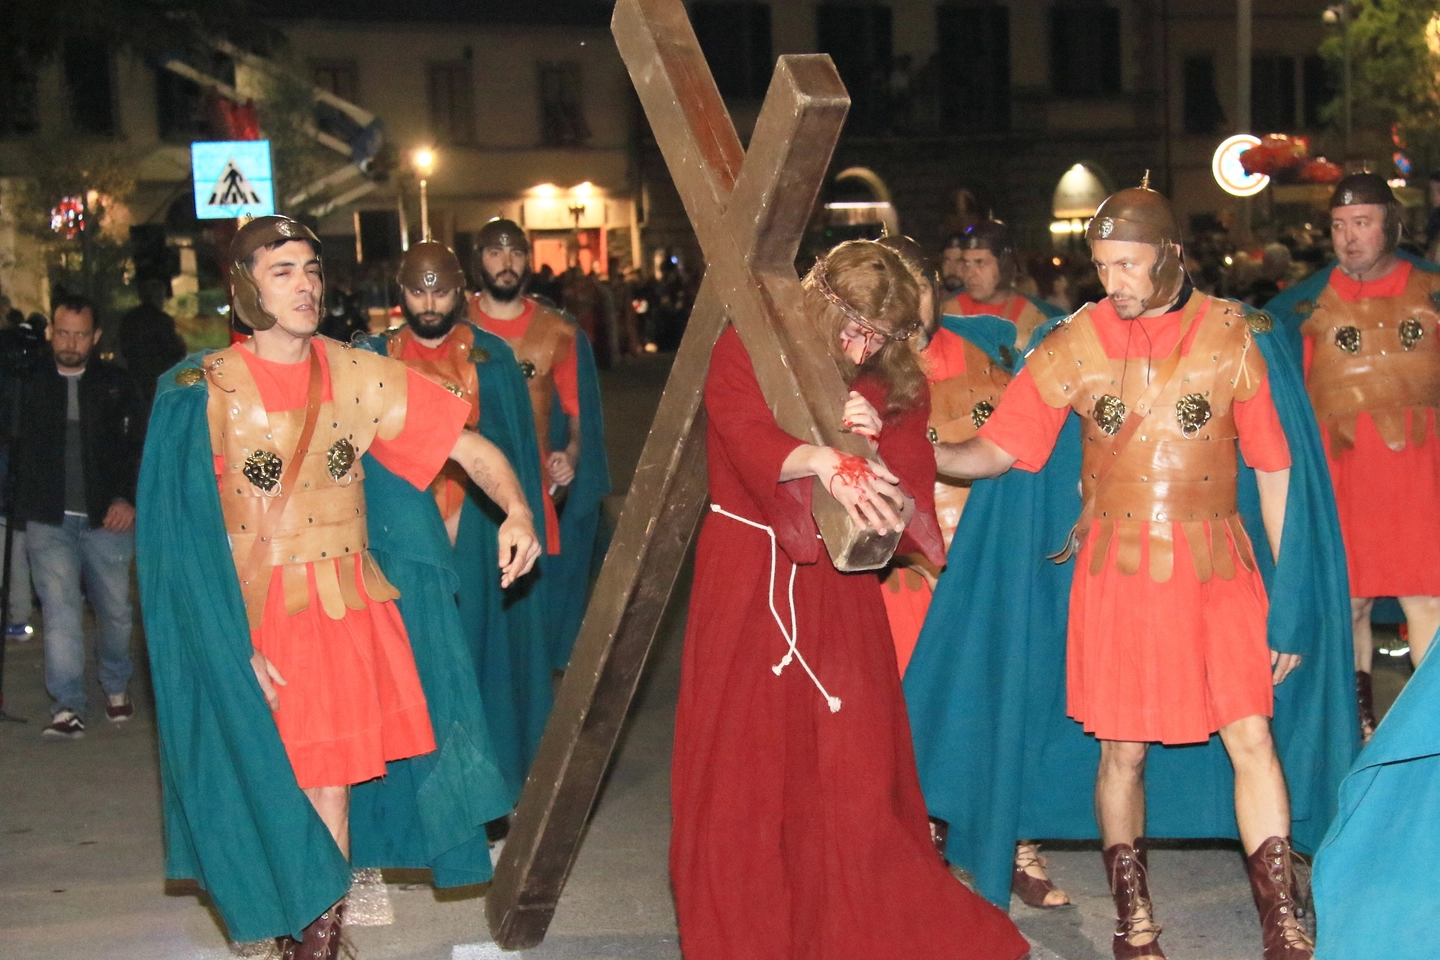 A Grassina, vicino Firenze, c’è la rievocazione storica della Passione di Cristo